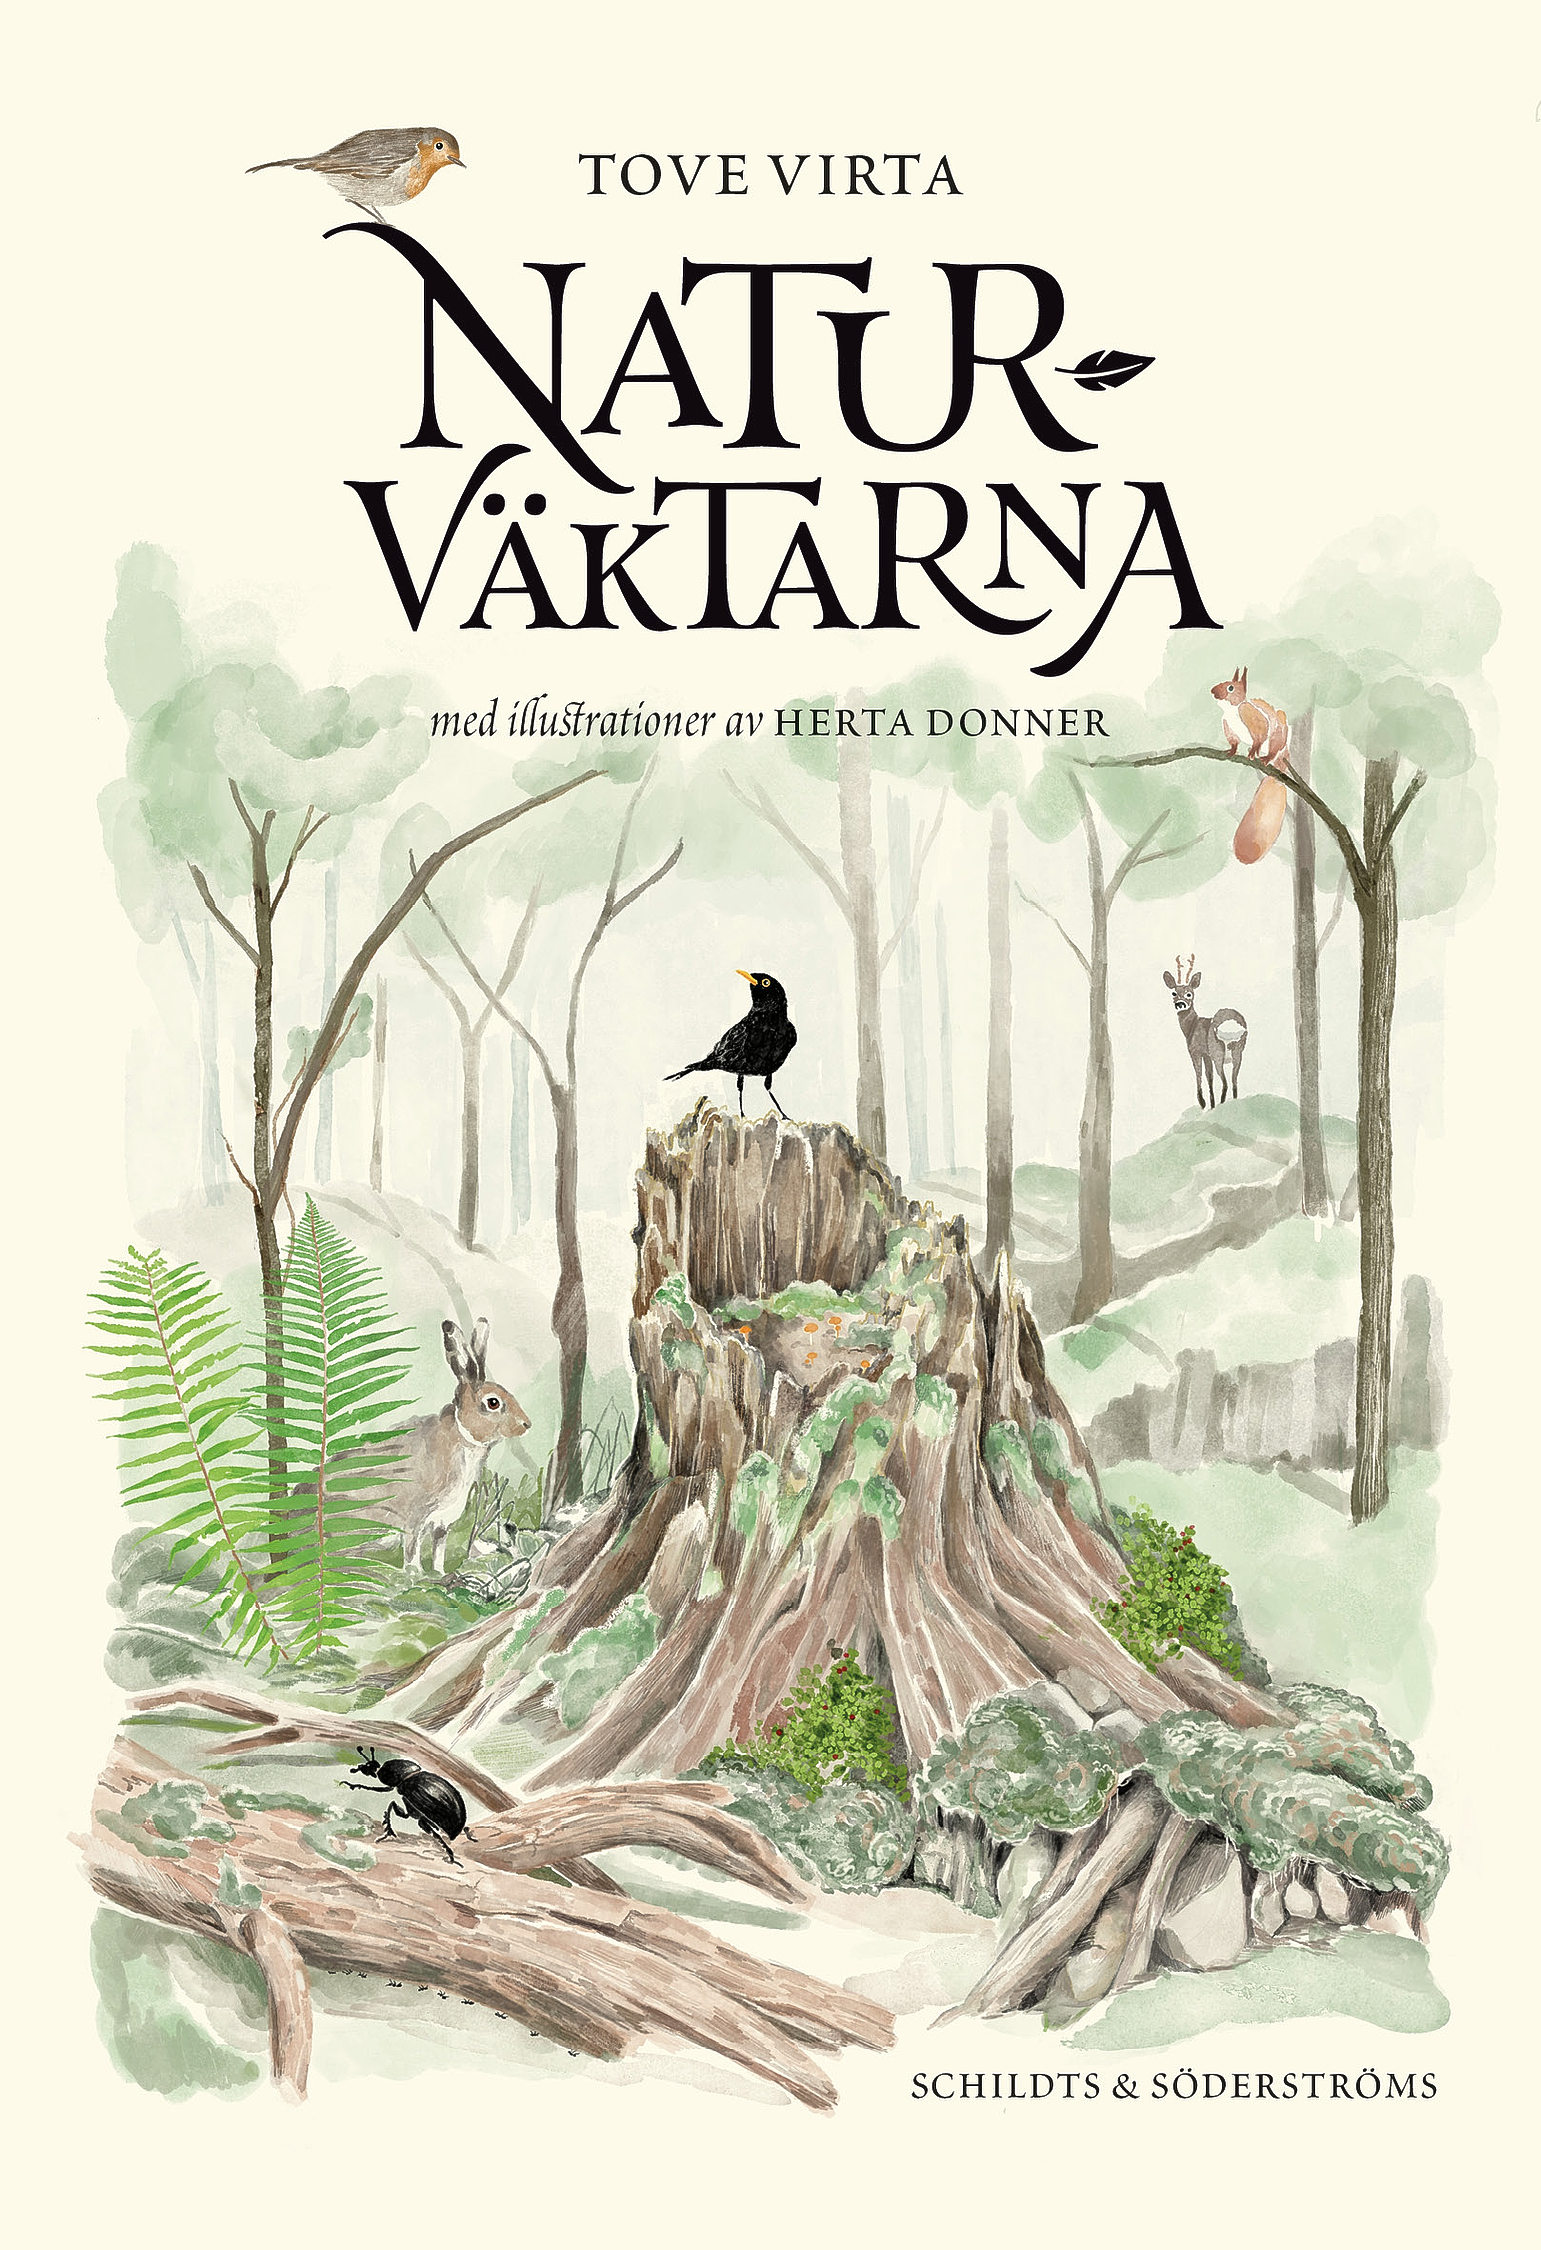 Bokomslag med titeln "Naturväktarna". Illustrerad skogsvy med fåglar och andra djur kring en stor stubbe.